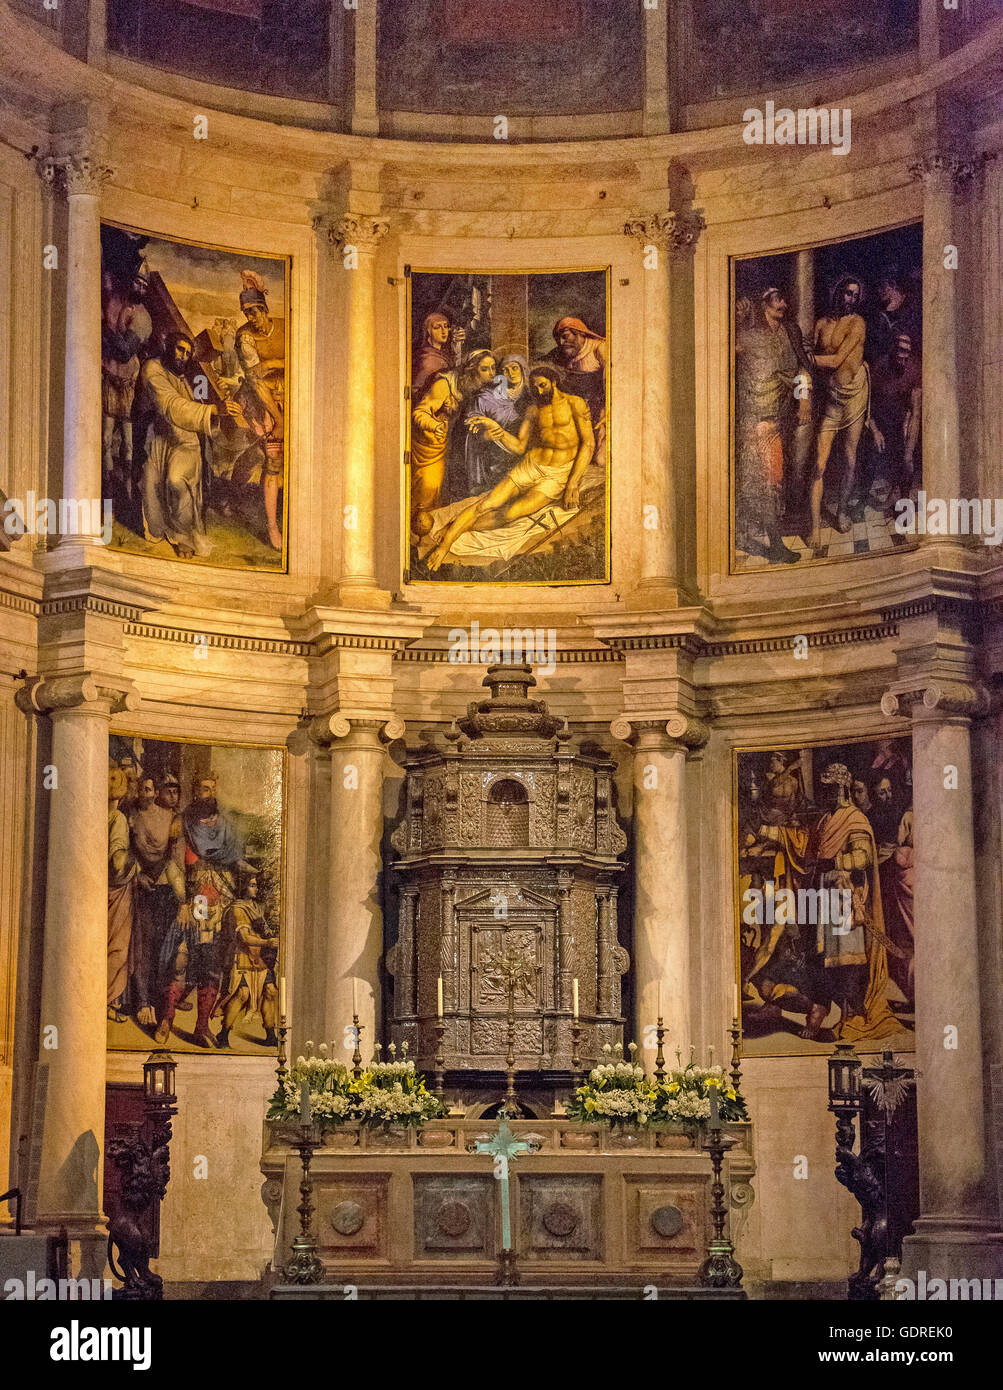 Altare, Monastero dos Jerónimos, Sito Patrimonio Mondiale dell'UNESCO, Lisbona, distretto di Lisbona, Portogallo, Europa, Fotografia di viaggio Foto Stock